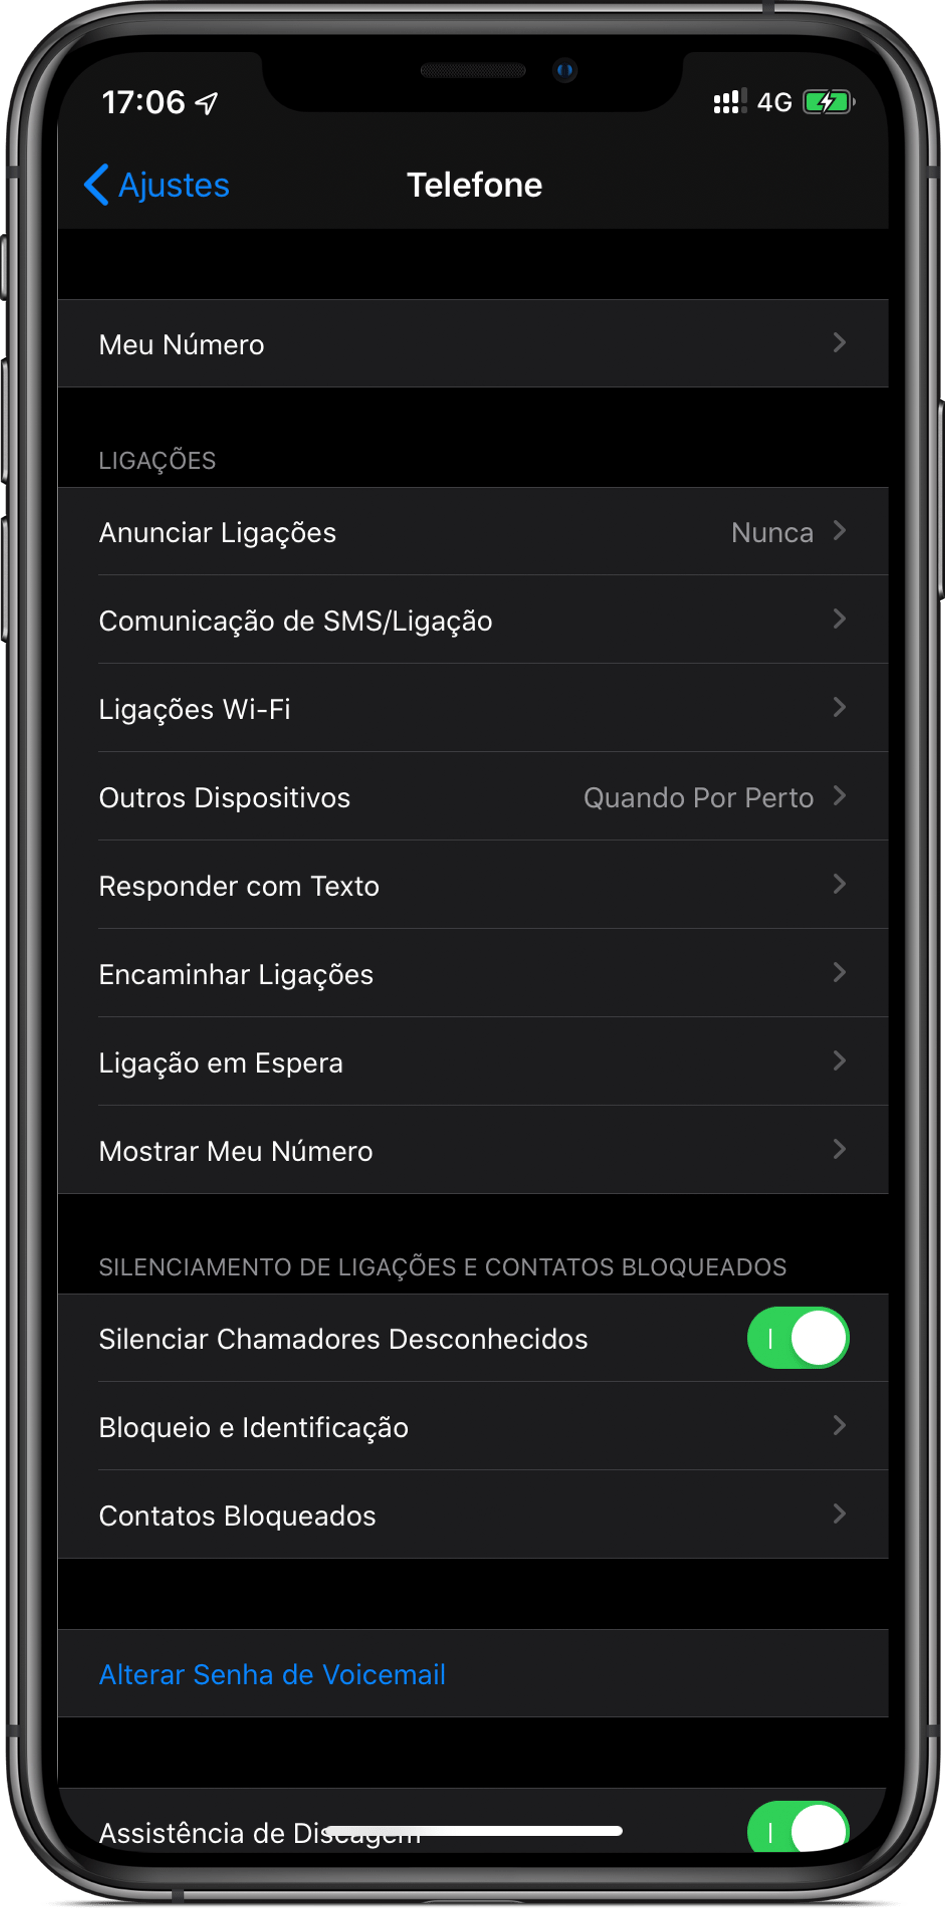 Recurso "Silenciar Chamadores Desconhecidos" do iOS 13